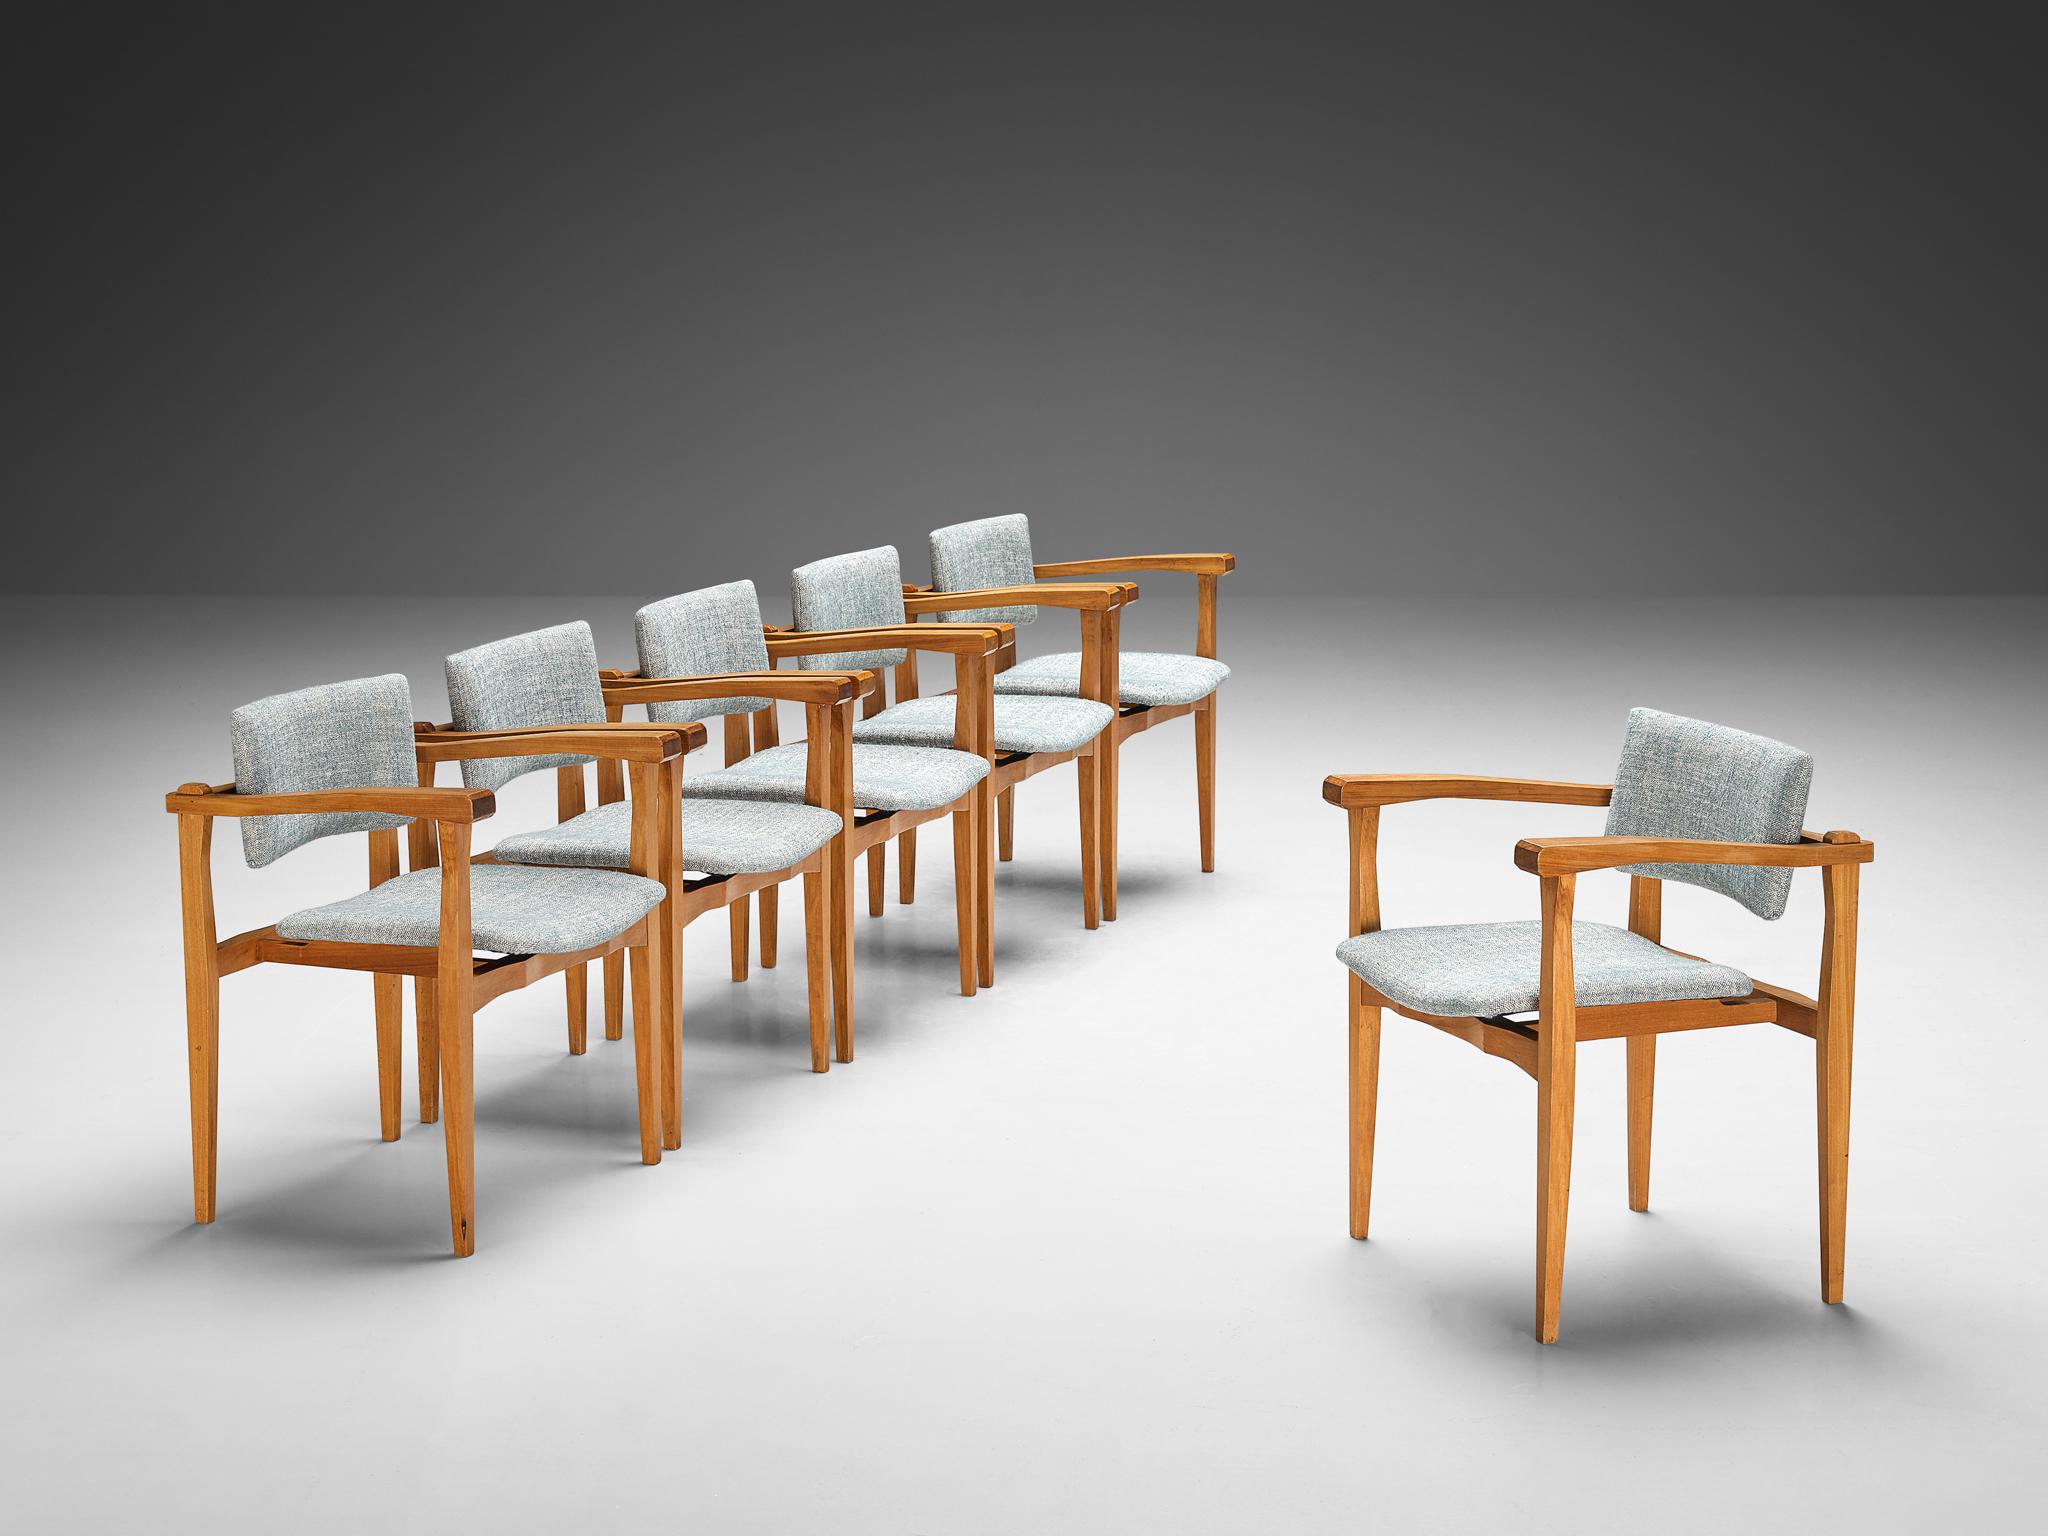 Ensemble de six fauteuils, noyer, tissu de Pierre Frey, Italie, années 1960.

Cet ensemble de six fauteuils fabriqués en Italie est modeste et pur dans son design. Les chaises présentent un cadre ouvert et architectural en bois de noyer, constitué